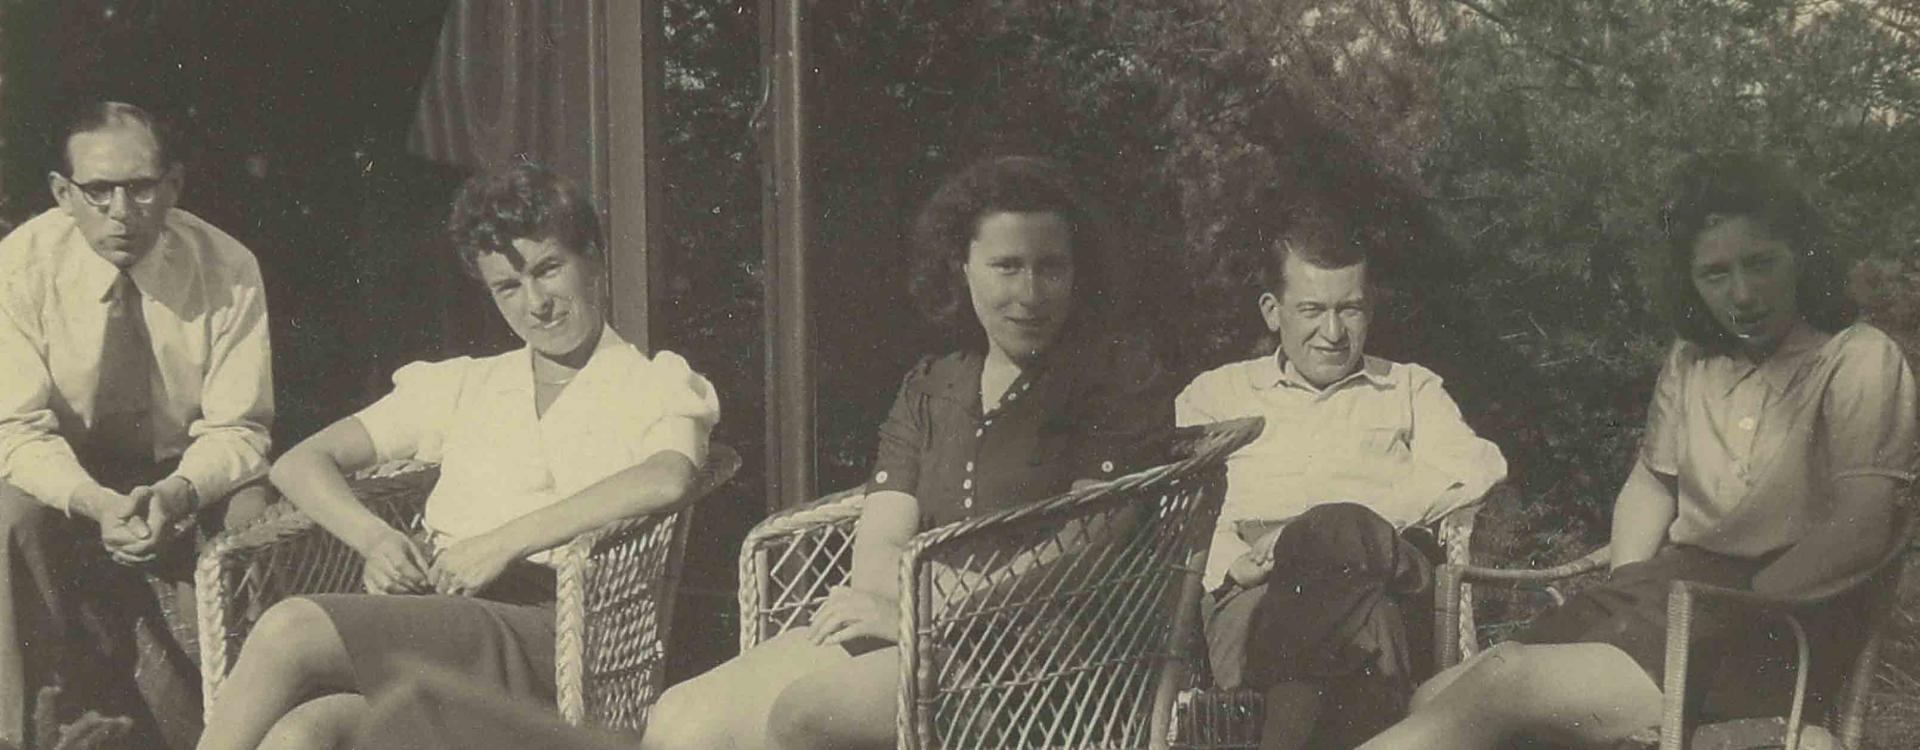 Schwarz-weiß Fotografie von zwei Männern und drei Frauen, die auf Stühlen in einem Garten sitzen.